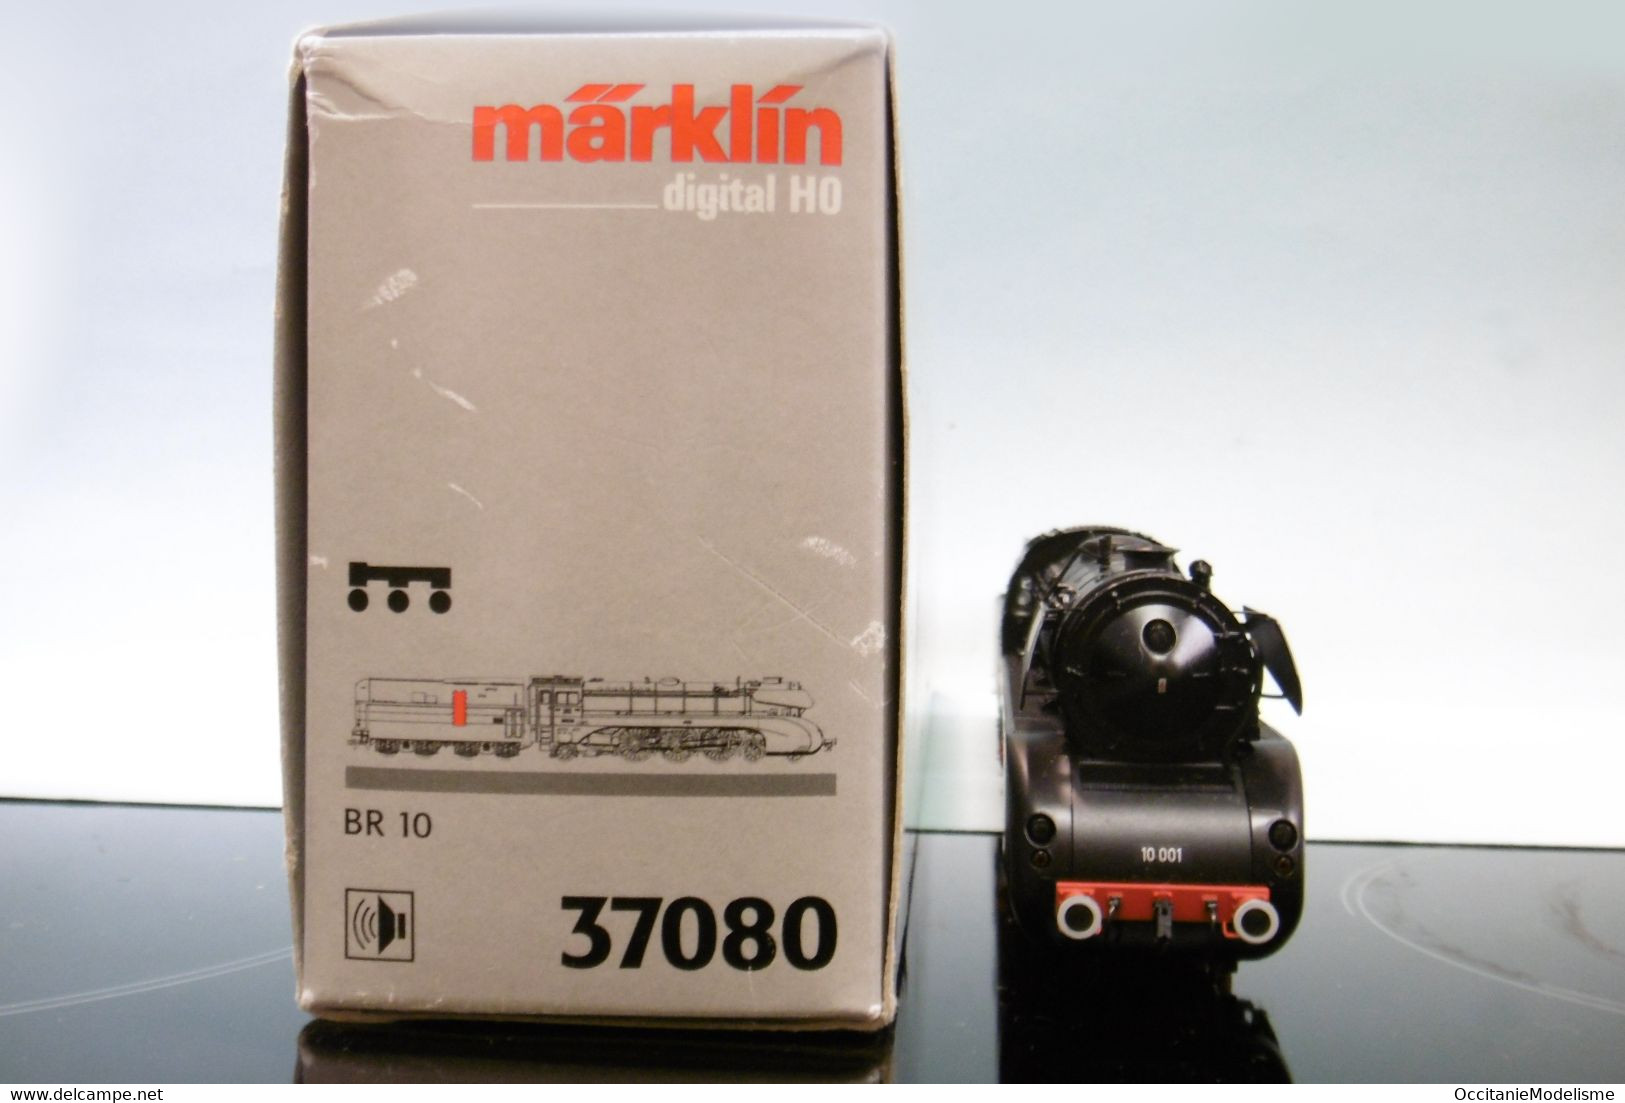 Märklin 3 rails - Locomotive vapeur BR 10 001 DB ép. III Delta Digital Sound réf. 37080 BO HO 1/87